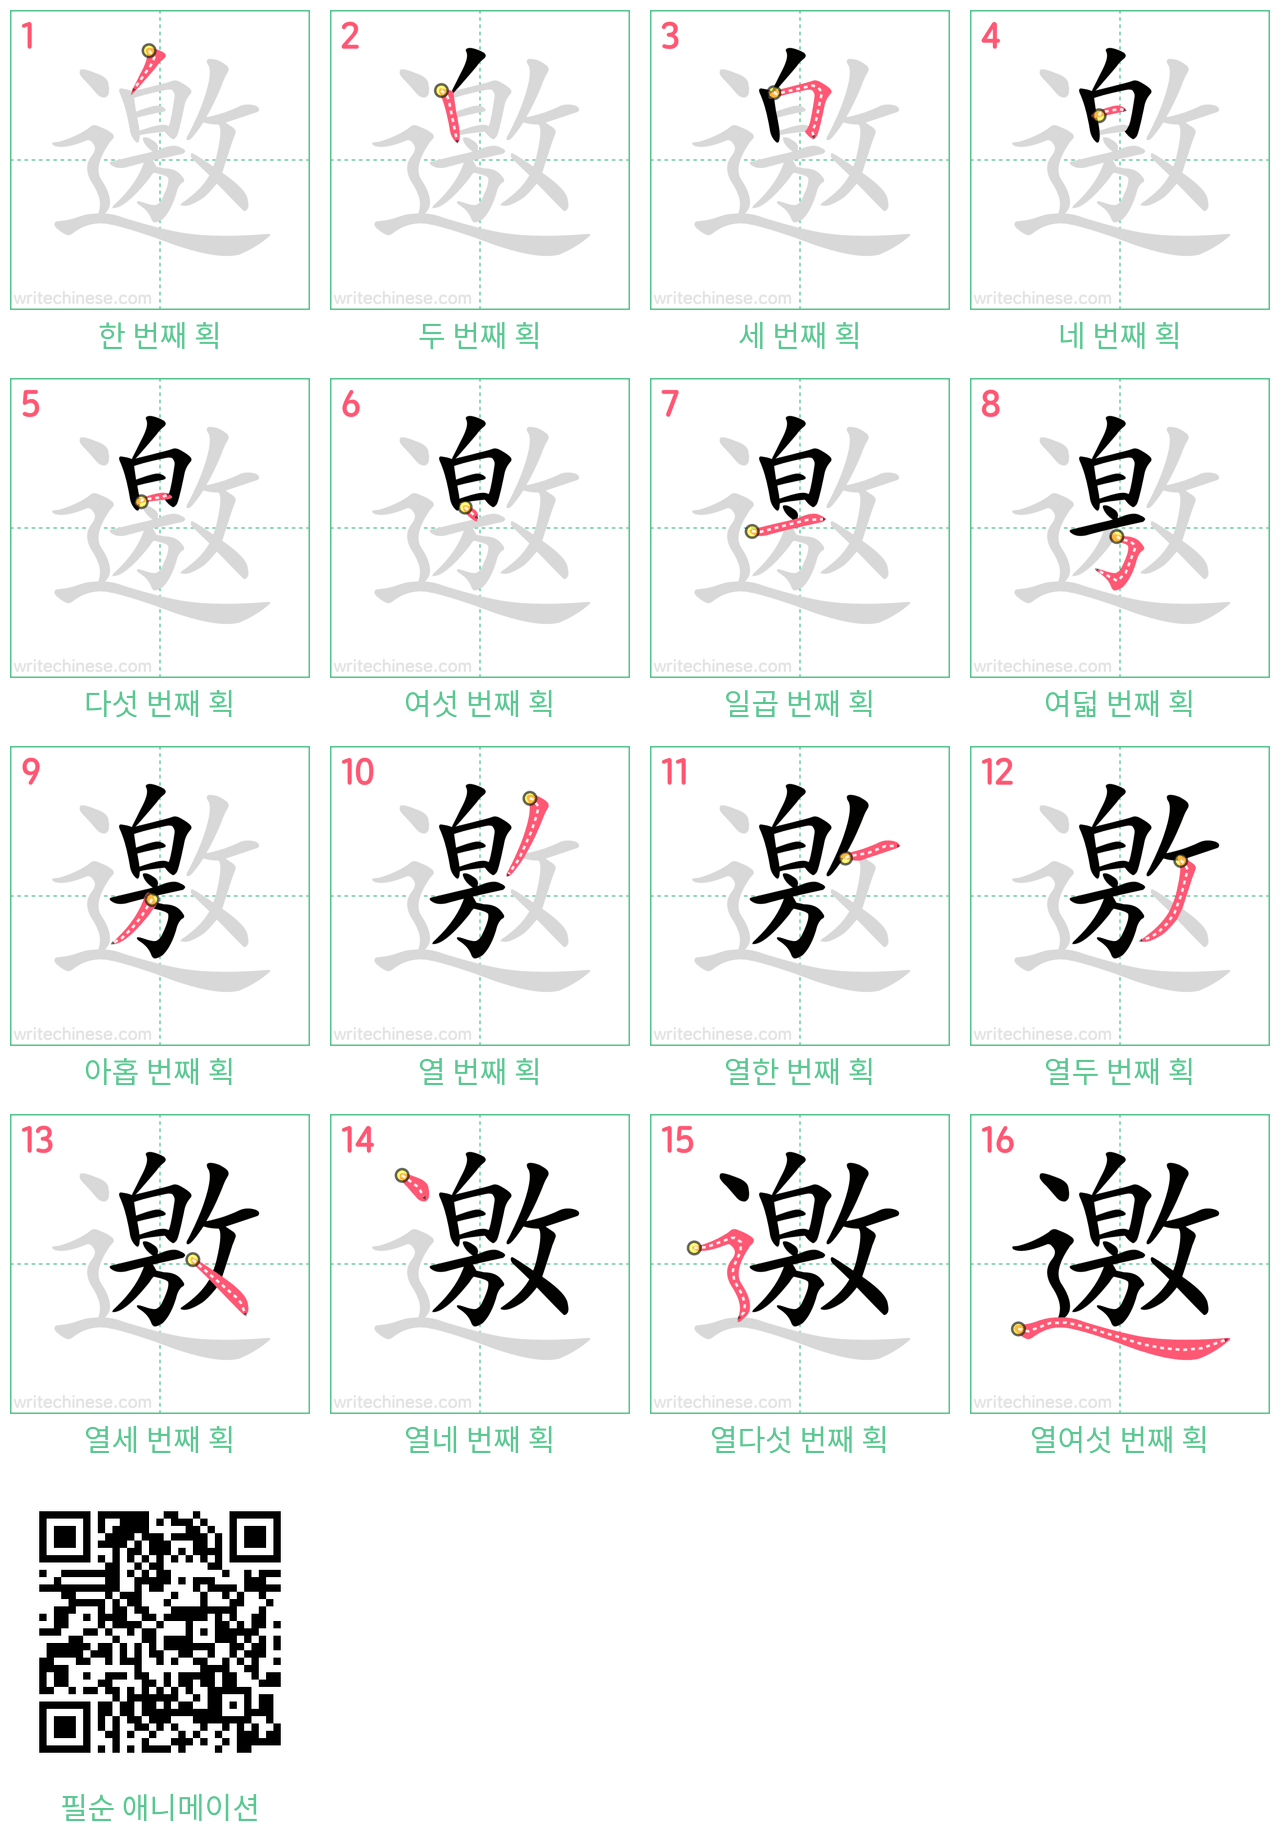 邀 step-by-step stroke order diagrams